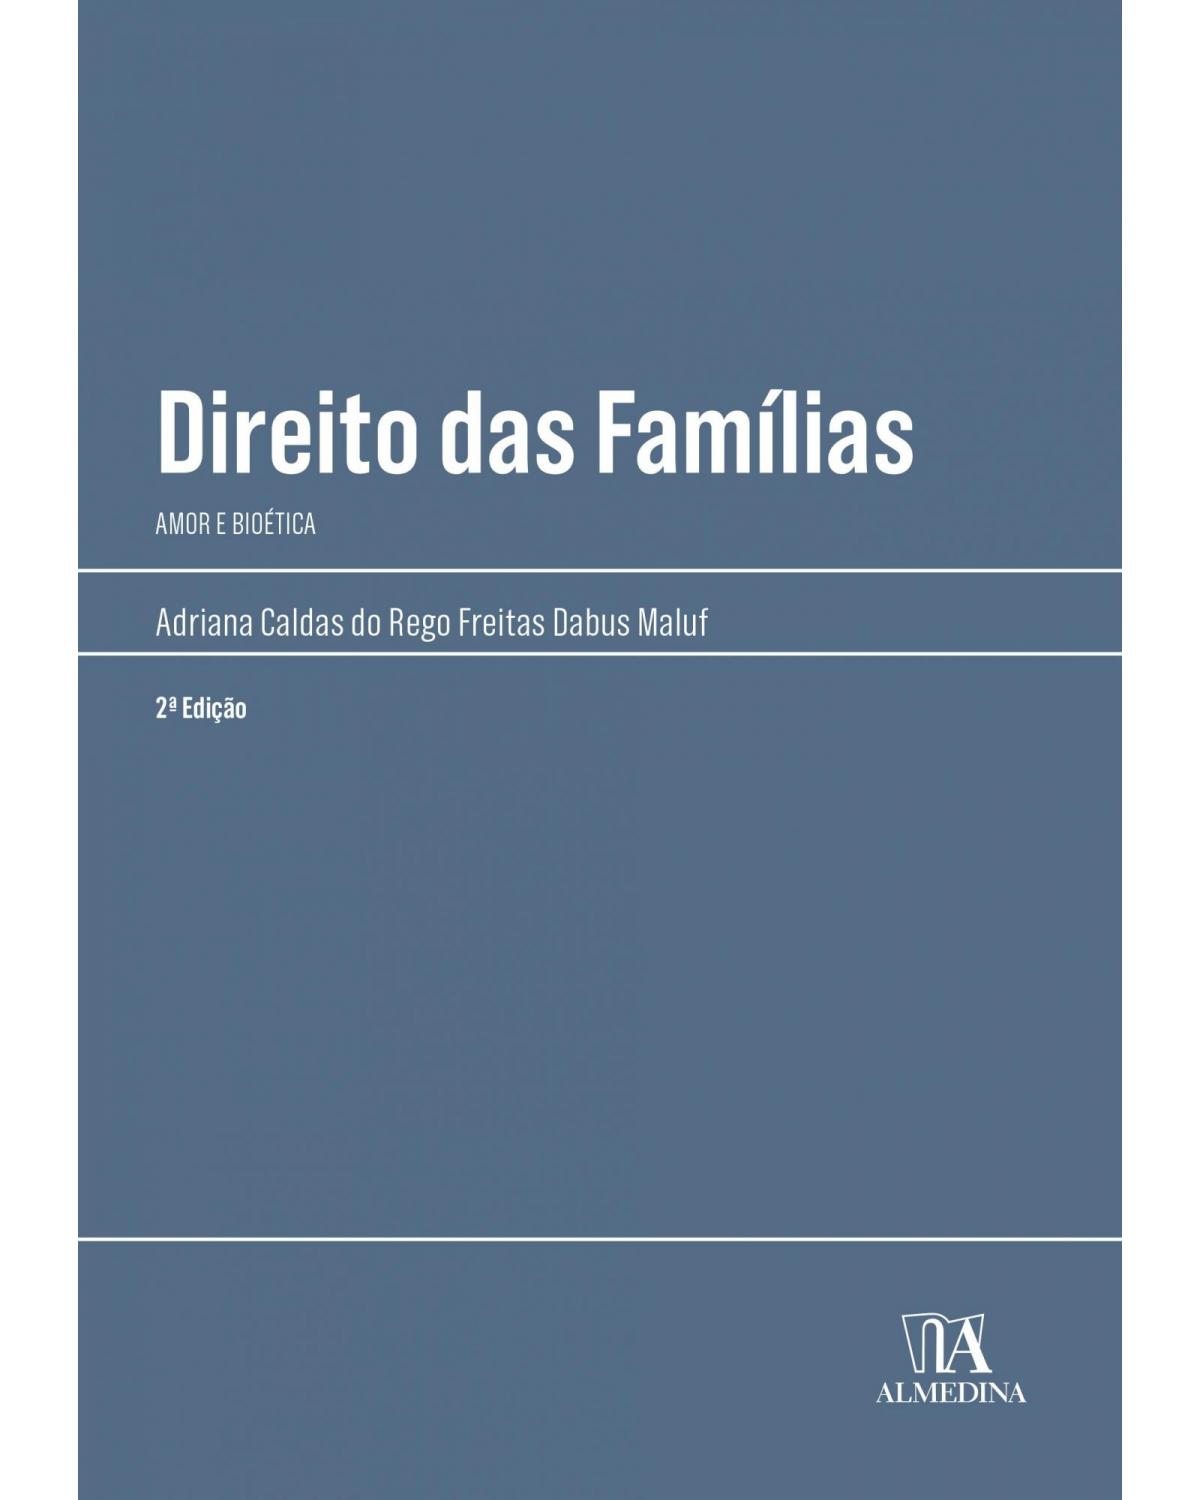 Direito das famílias - amor e bioética - 2ª Edição | 2022